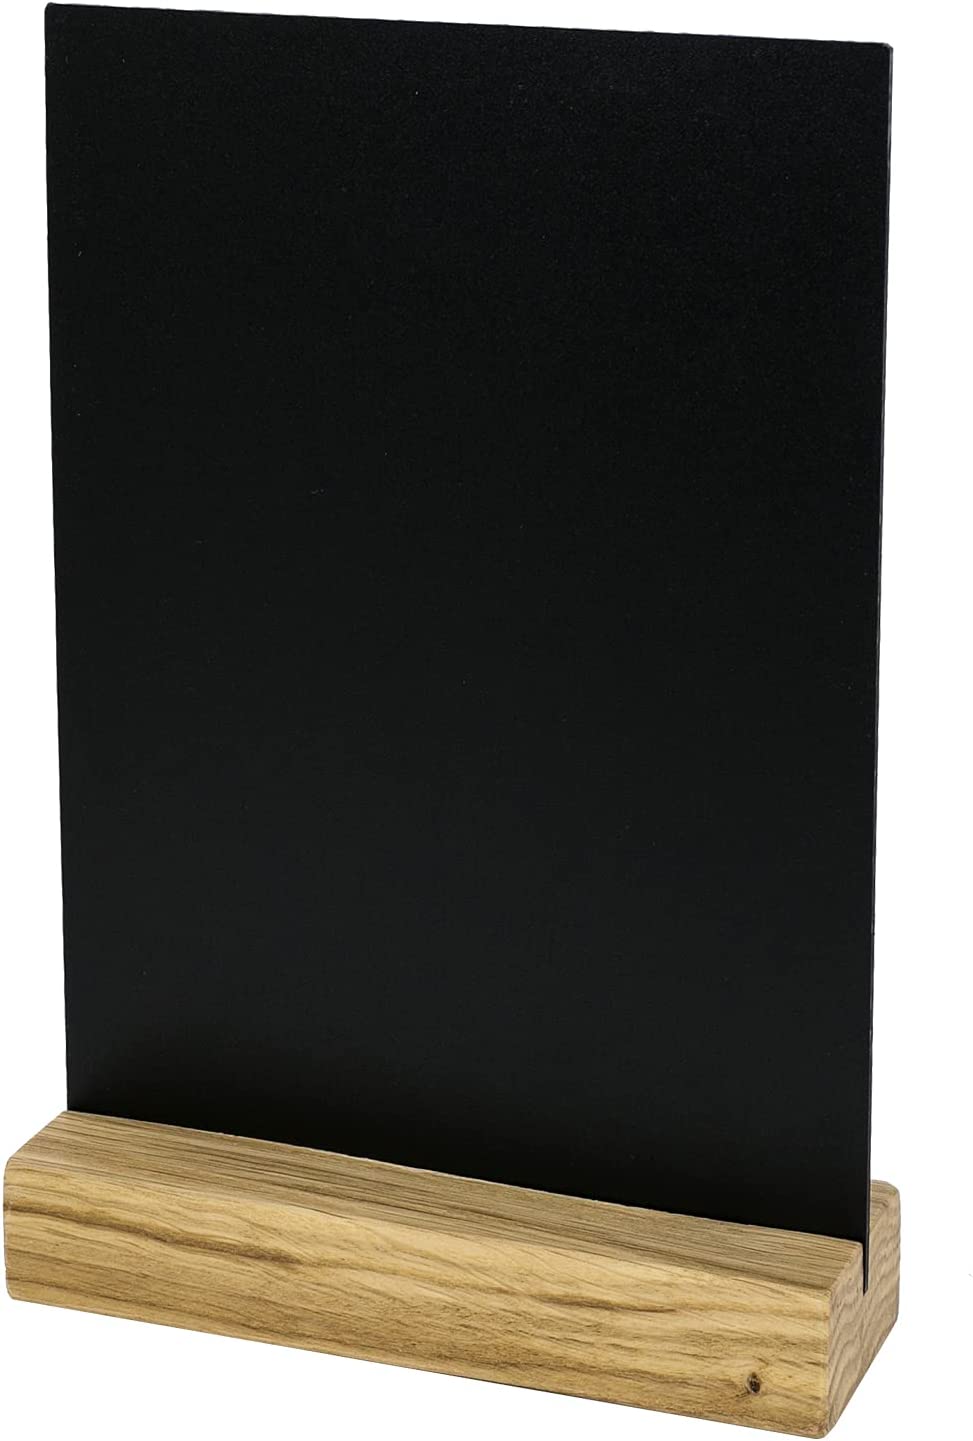 HMF 5x Acryl Tischaufsteller Kreidetafel mit Holzfuß DIN A5 schwarz